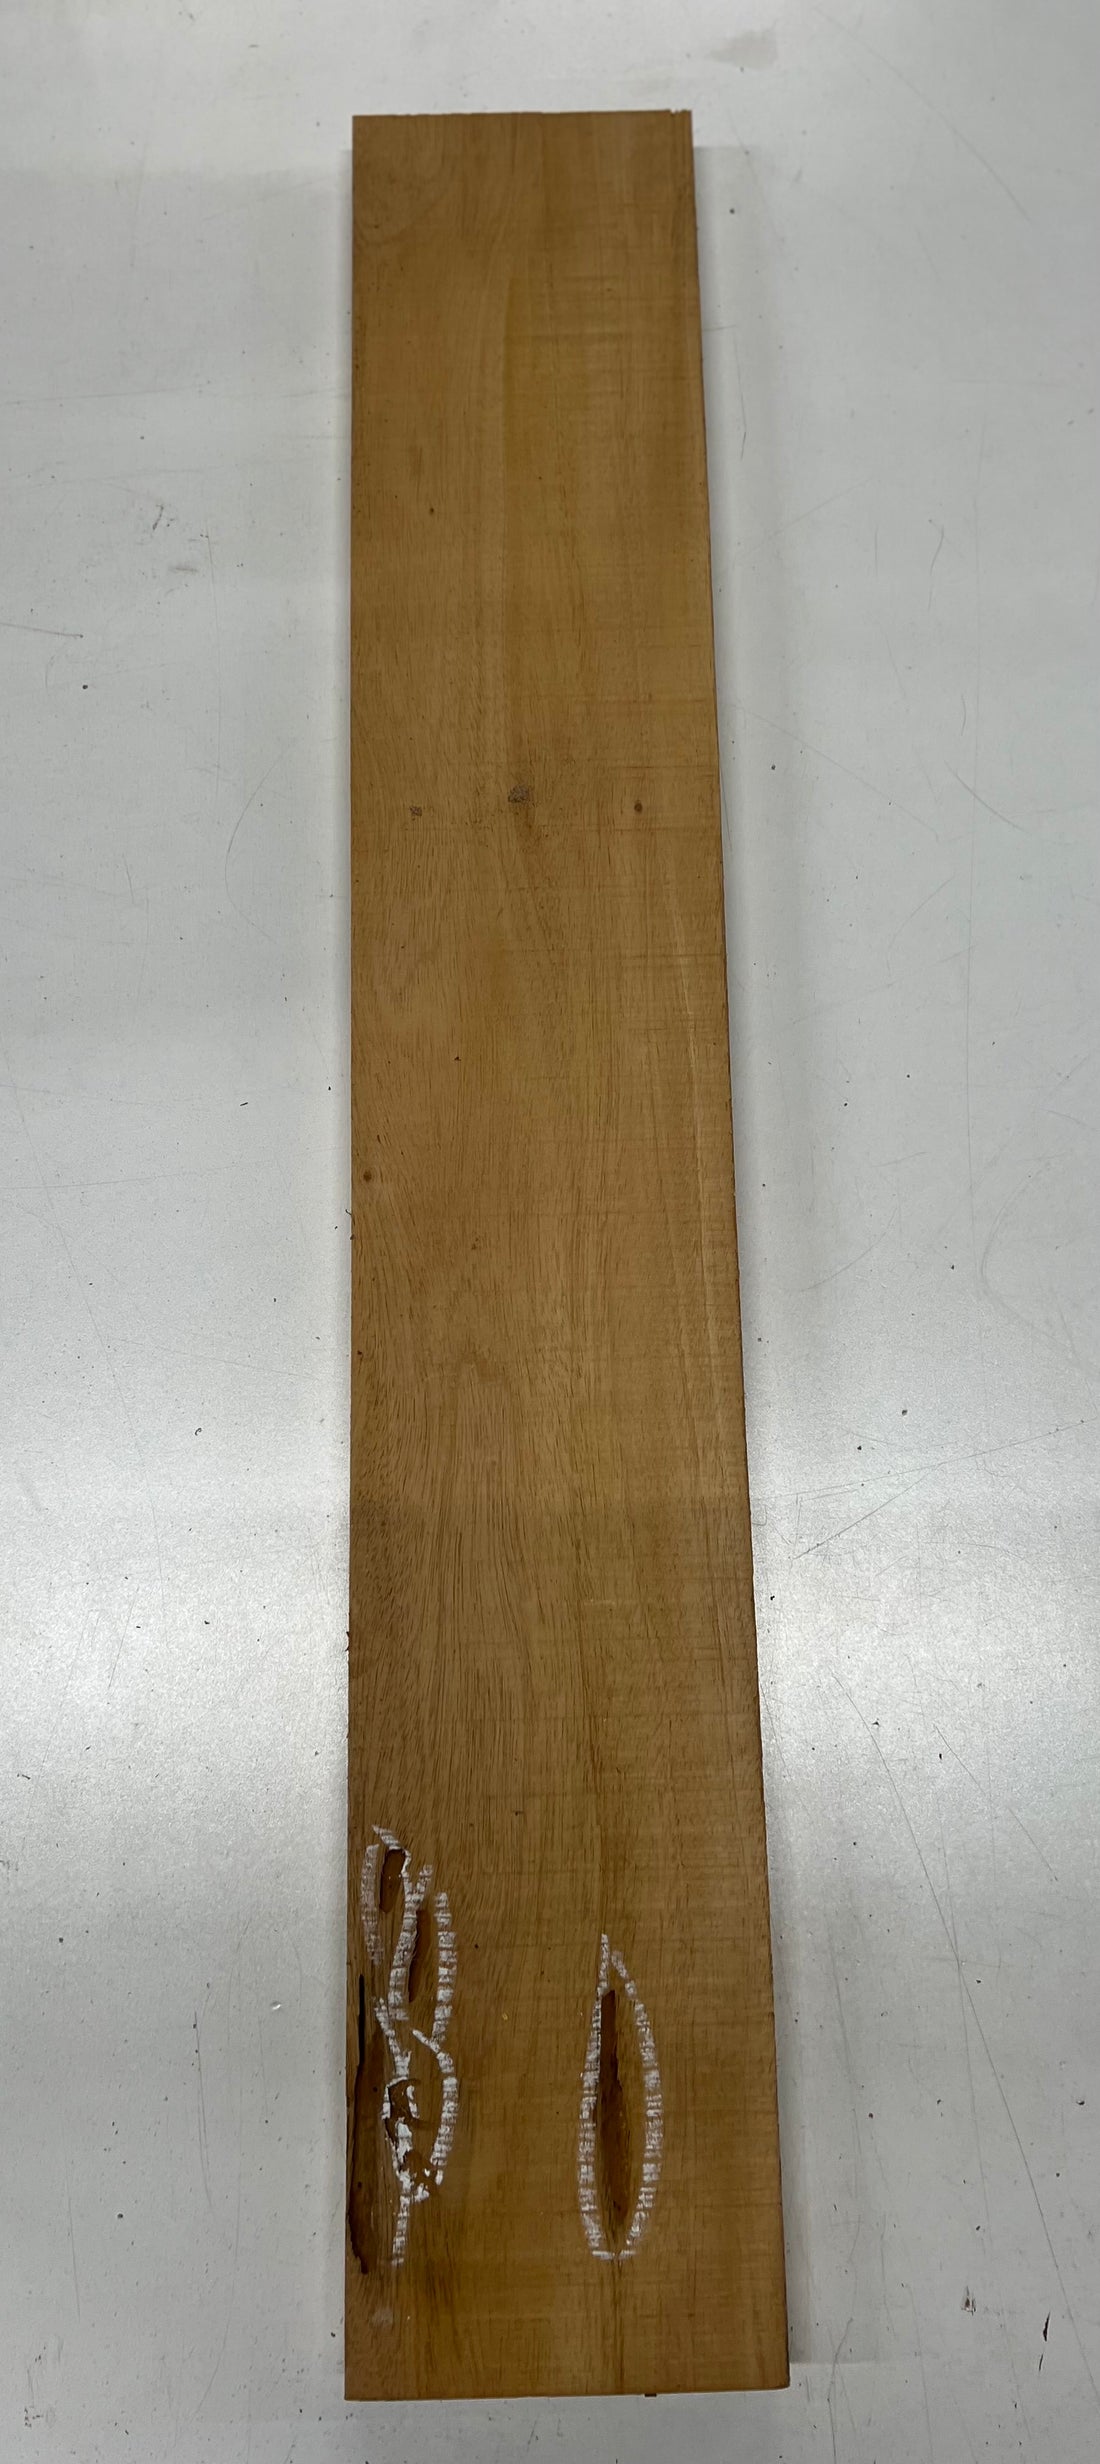 Honduran Mahogany Lumber Board Wood Blank 33&quot;x 5-1/2&quot;x 1&quot; 